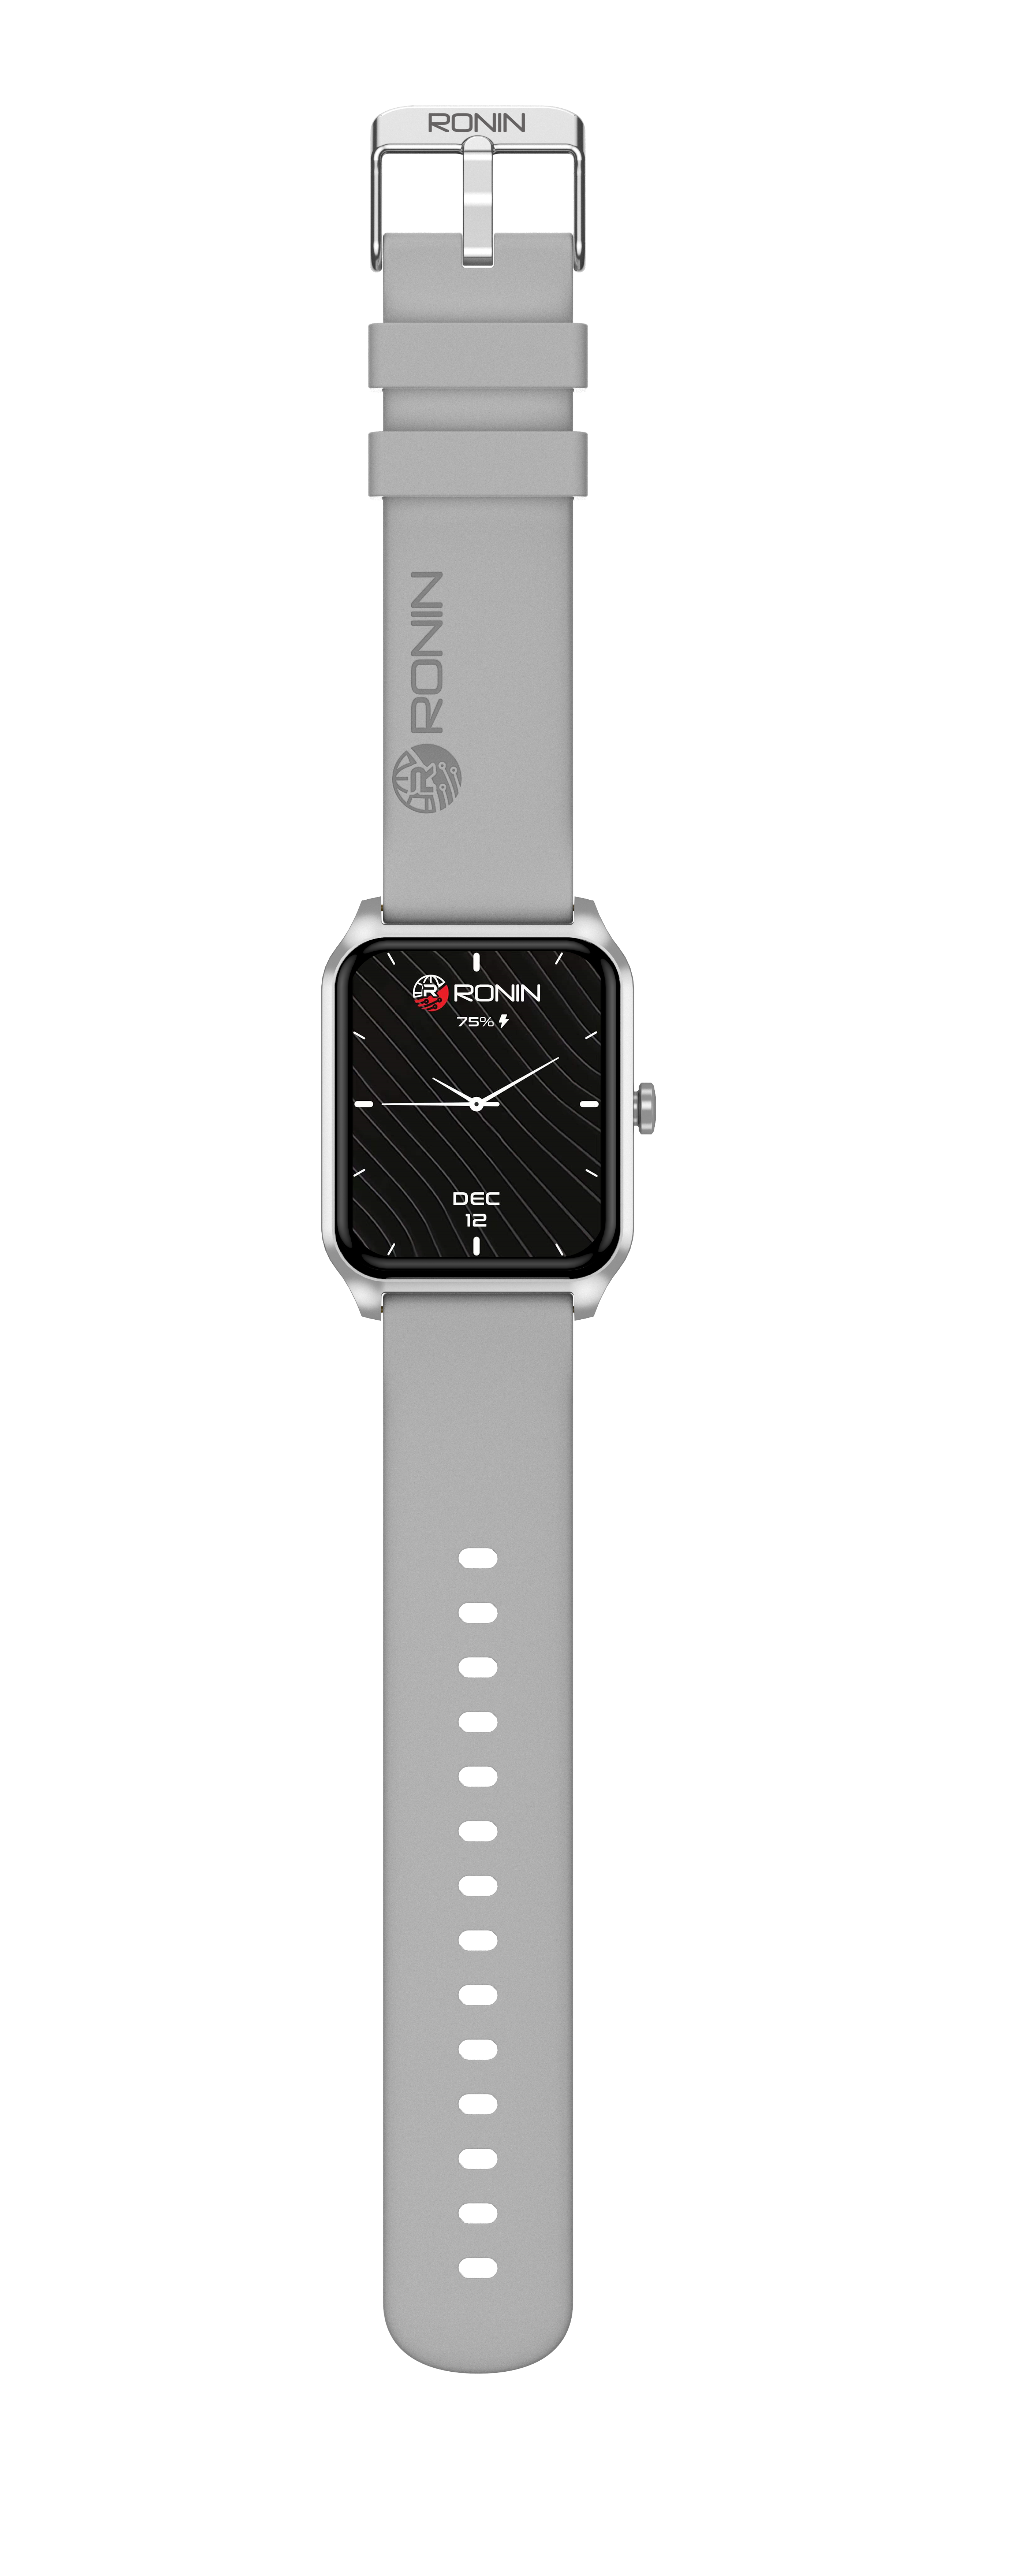 Ronin R-03 Smart Watch